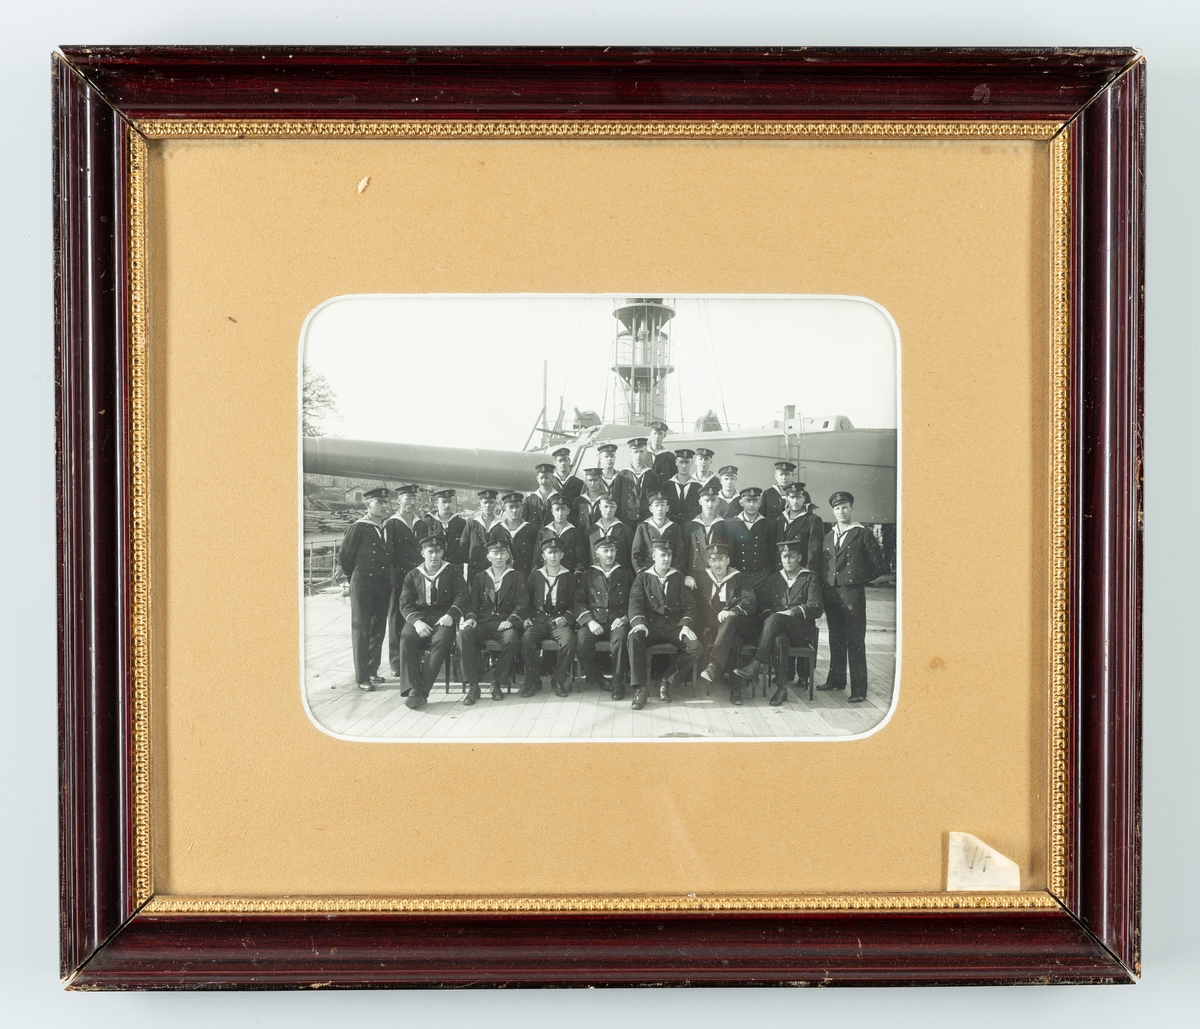 Denna gruppfoto visar underofficerare ombord på ett pansarskepp omkring 1920.